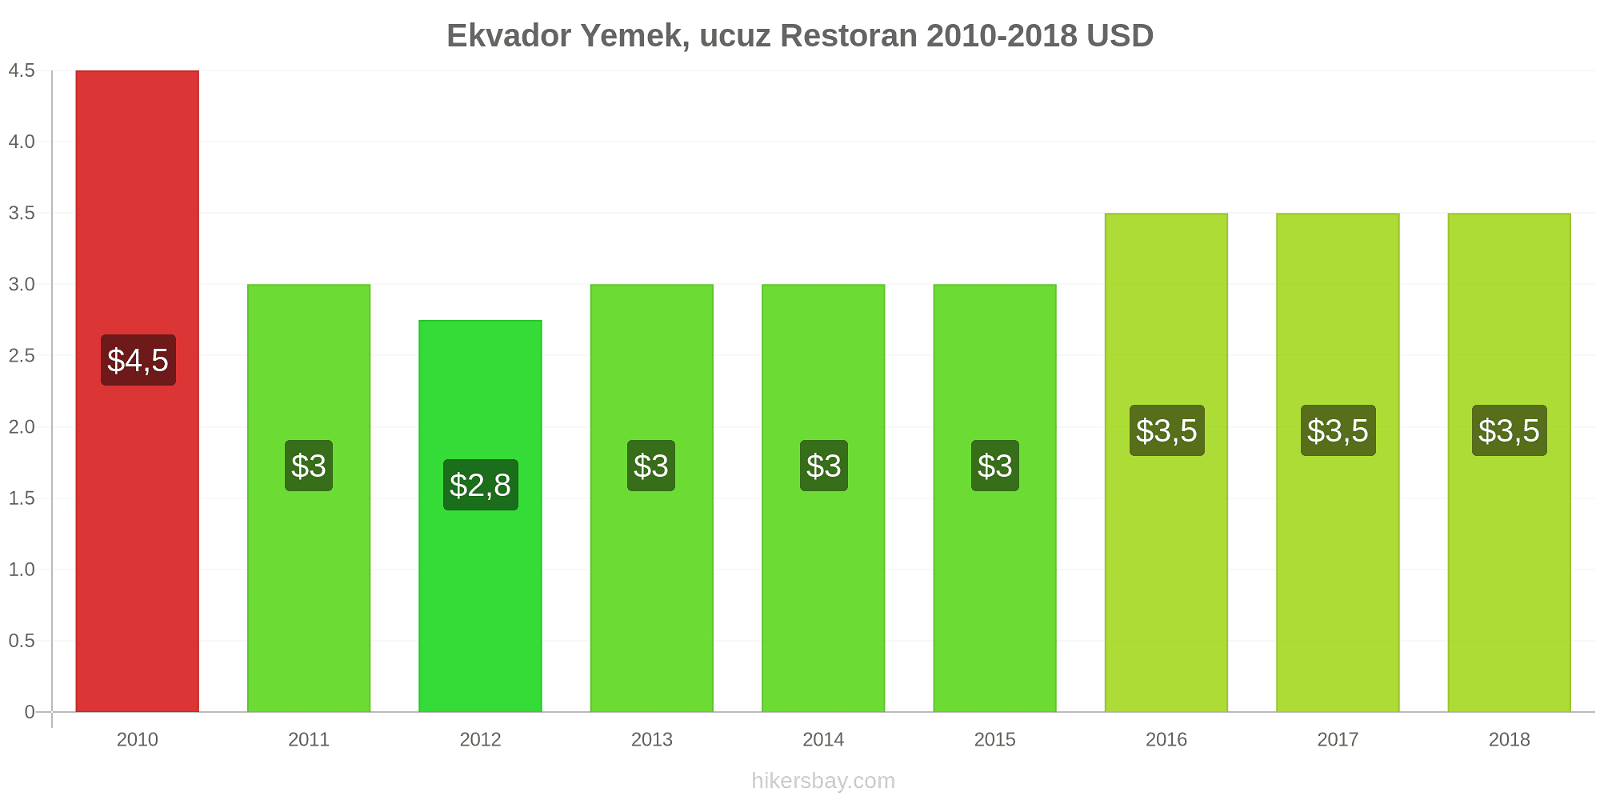 Ekvador fiyat değişiklikleri Ucuz bir restoranda yemek hikersbay.com